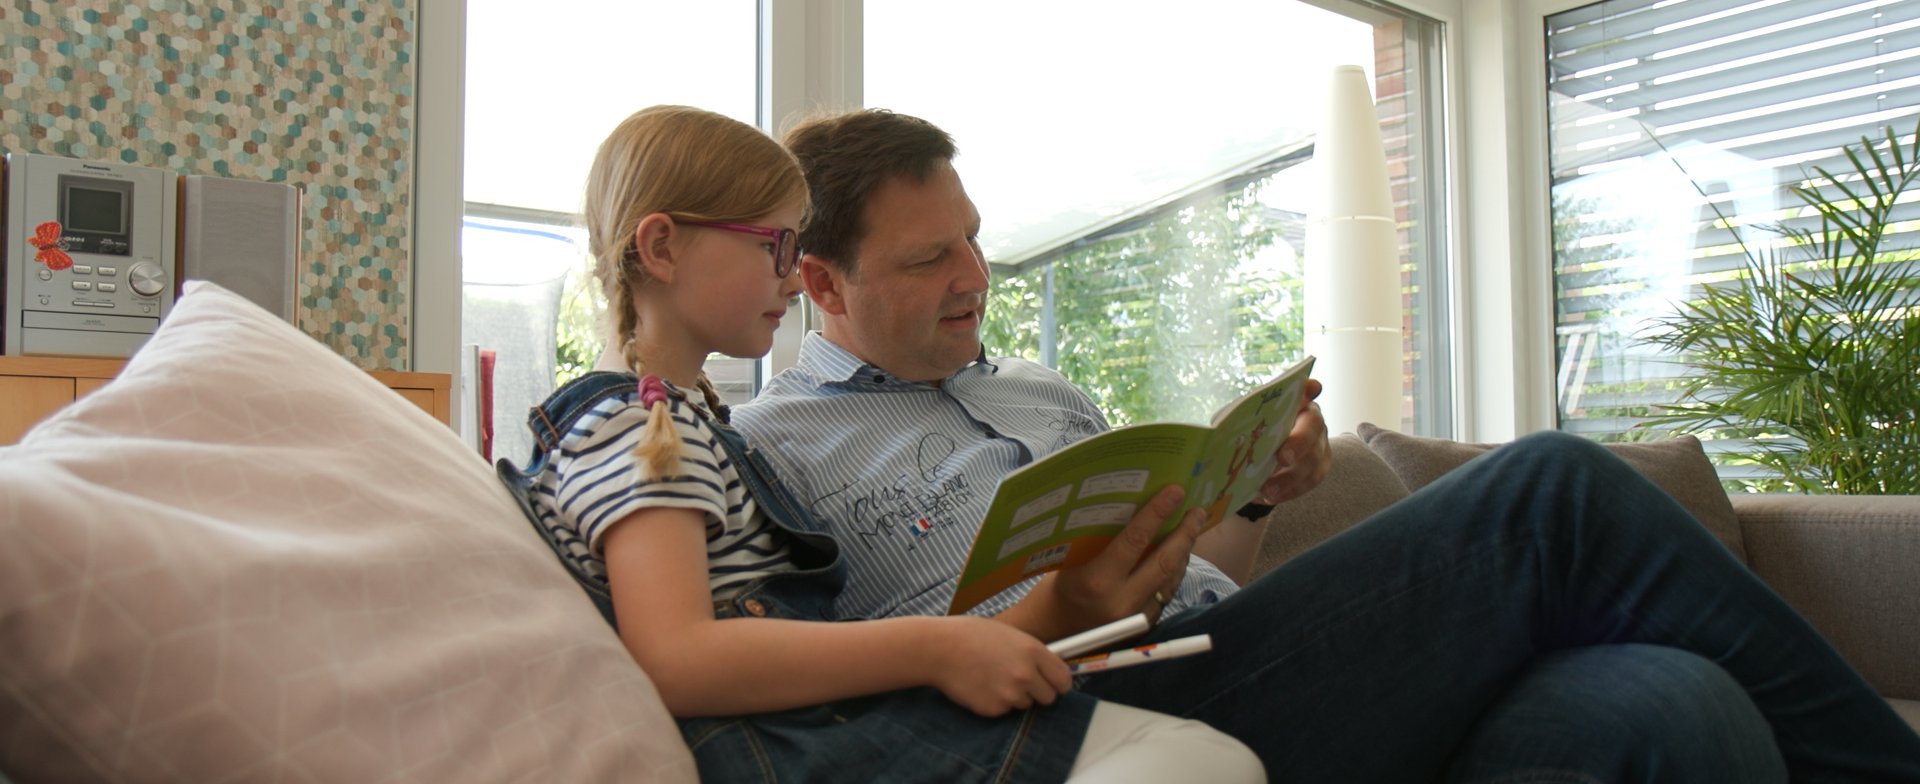 Julia und ihr Vater sitzen auf dem Sofa. Ihr Vater hält ein Buch in der Hannd. Copyright: MHH